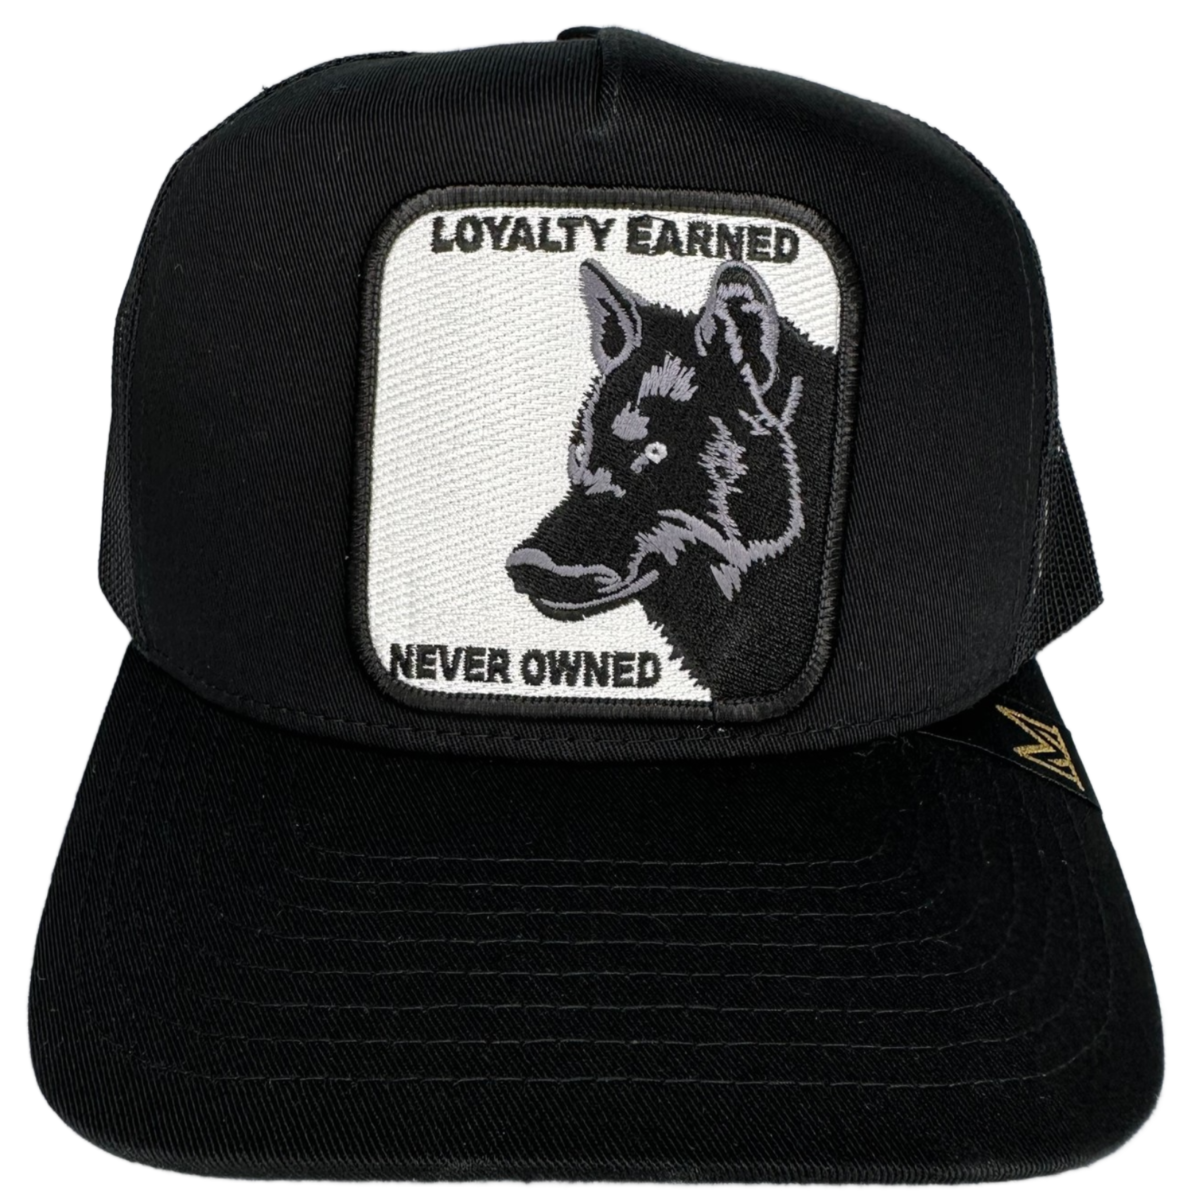 Loyalty Earned - Black